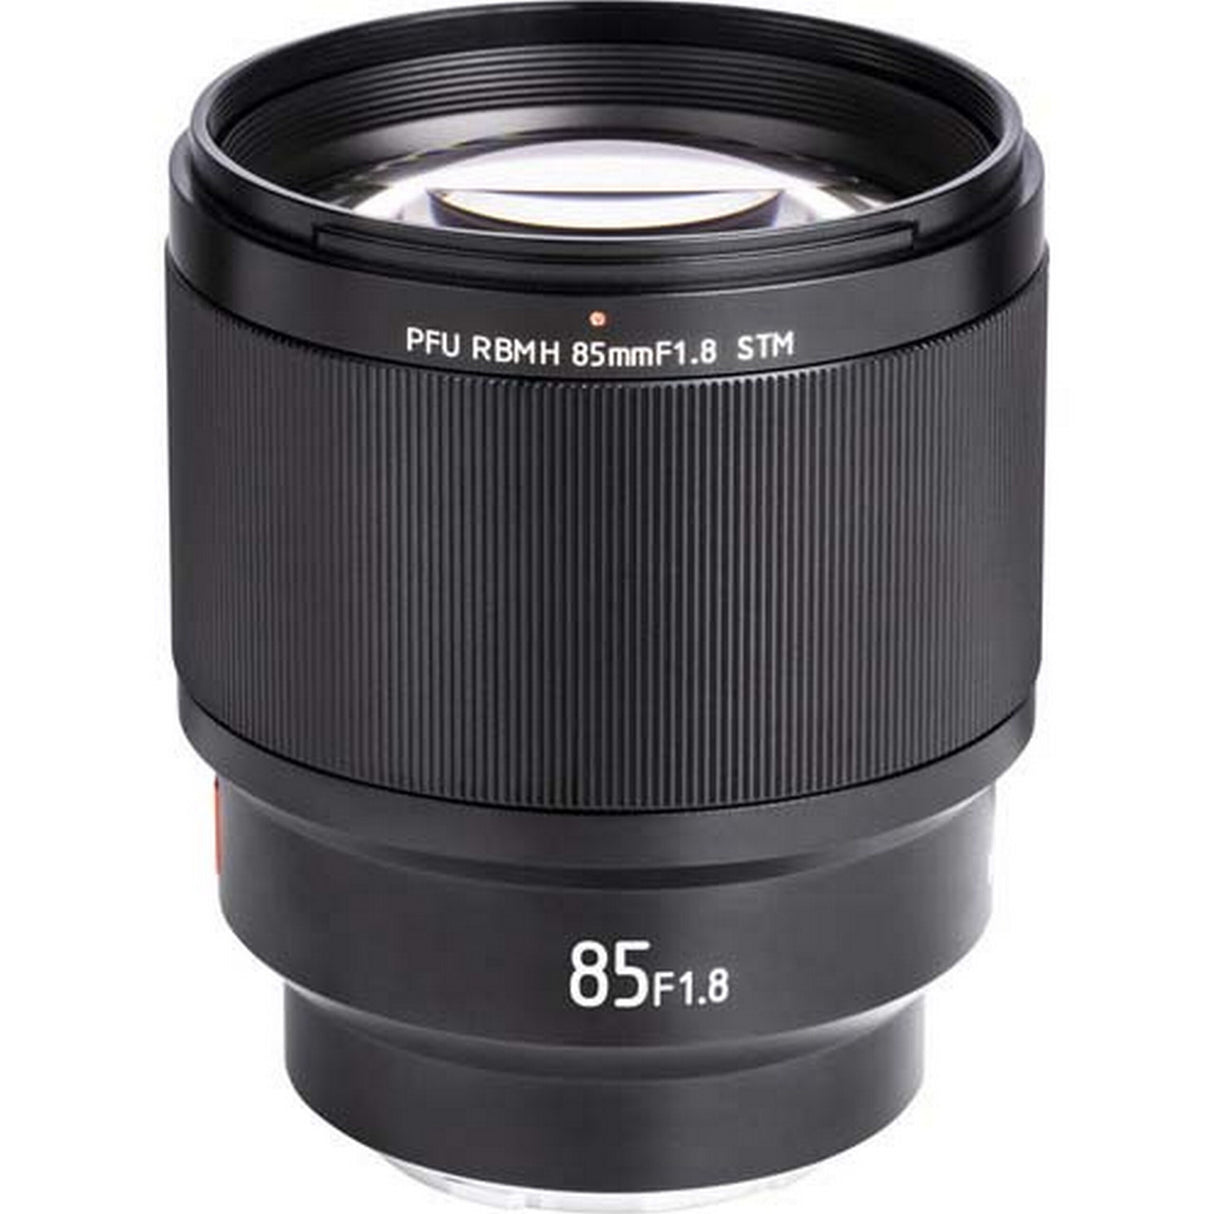 Viltrox FE-85MM STM 85mm F/1.8 Autofocus STM PFU RBMH Lens for Sony E